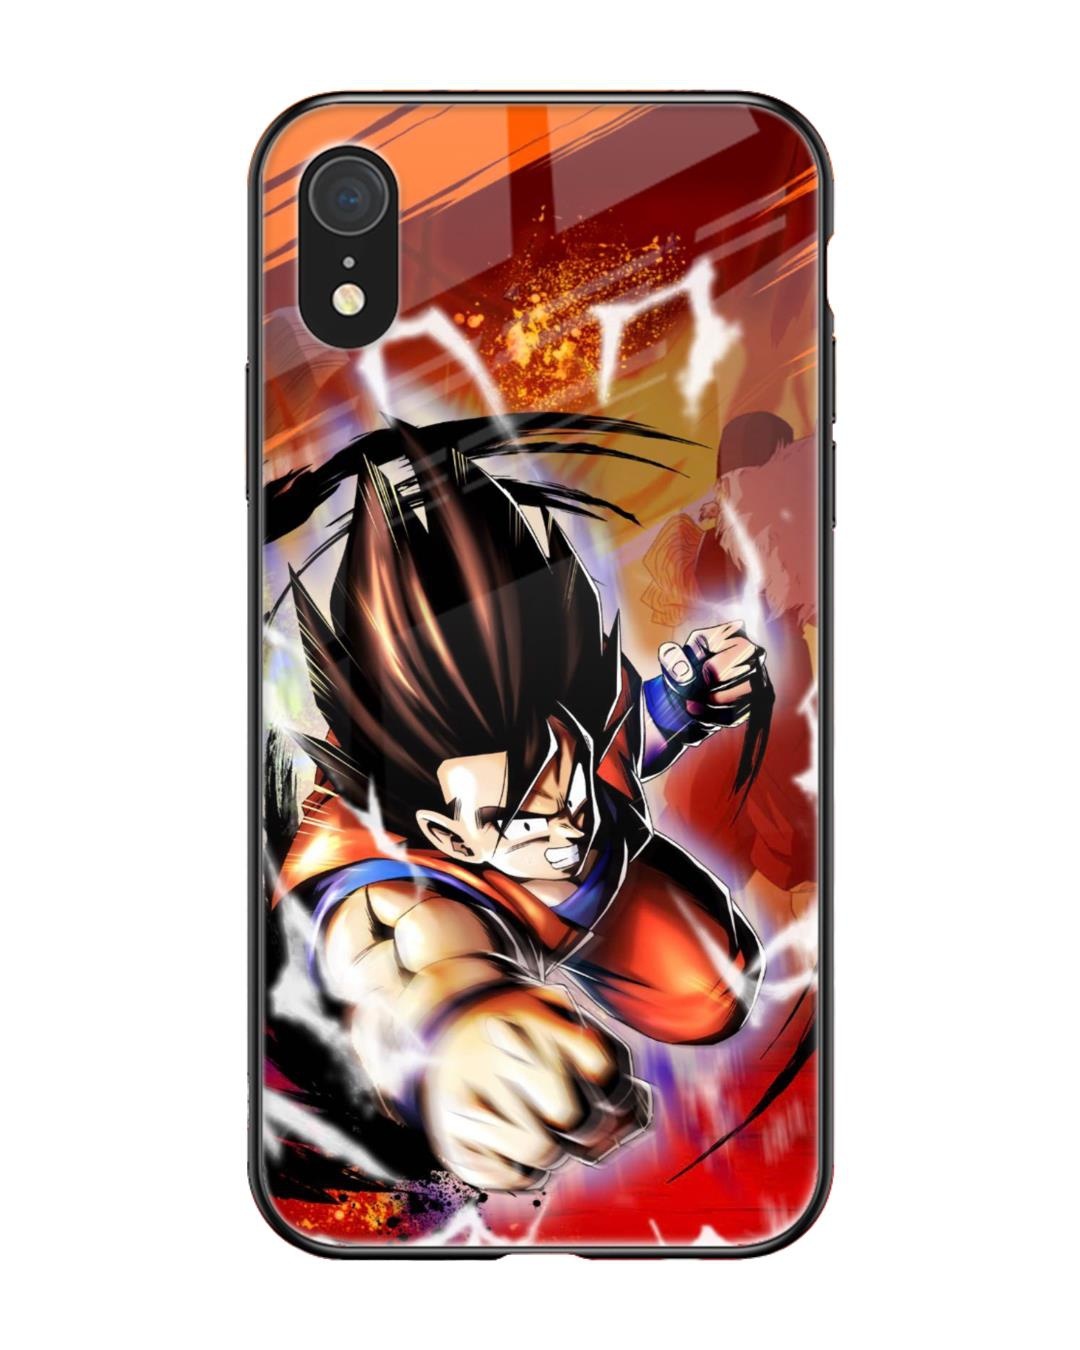 Anime iPhone Xr case  Unique Designs  ArtsCase